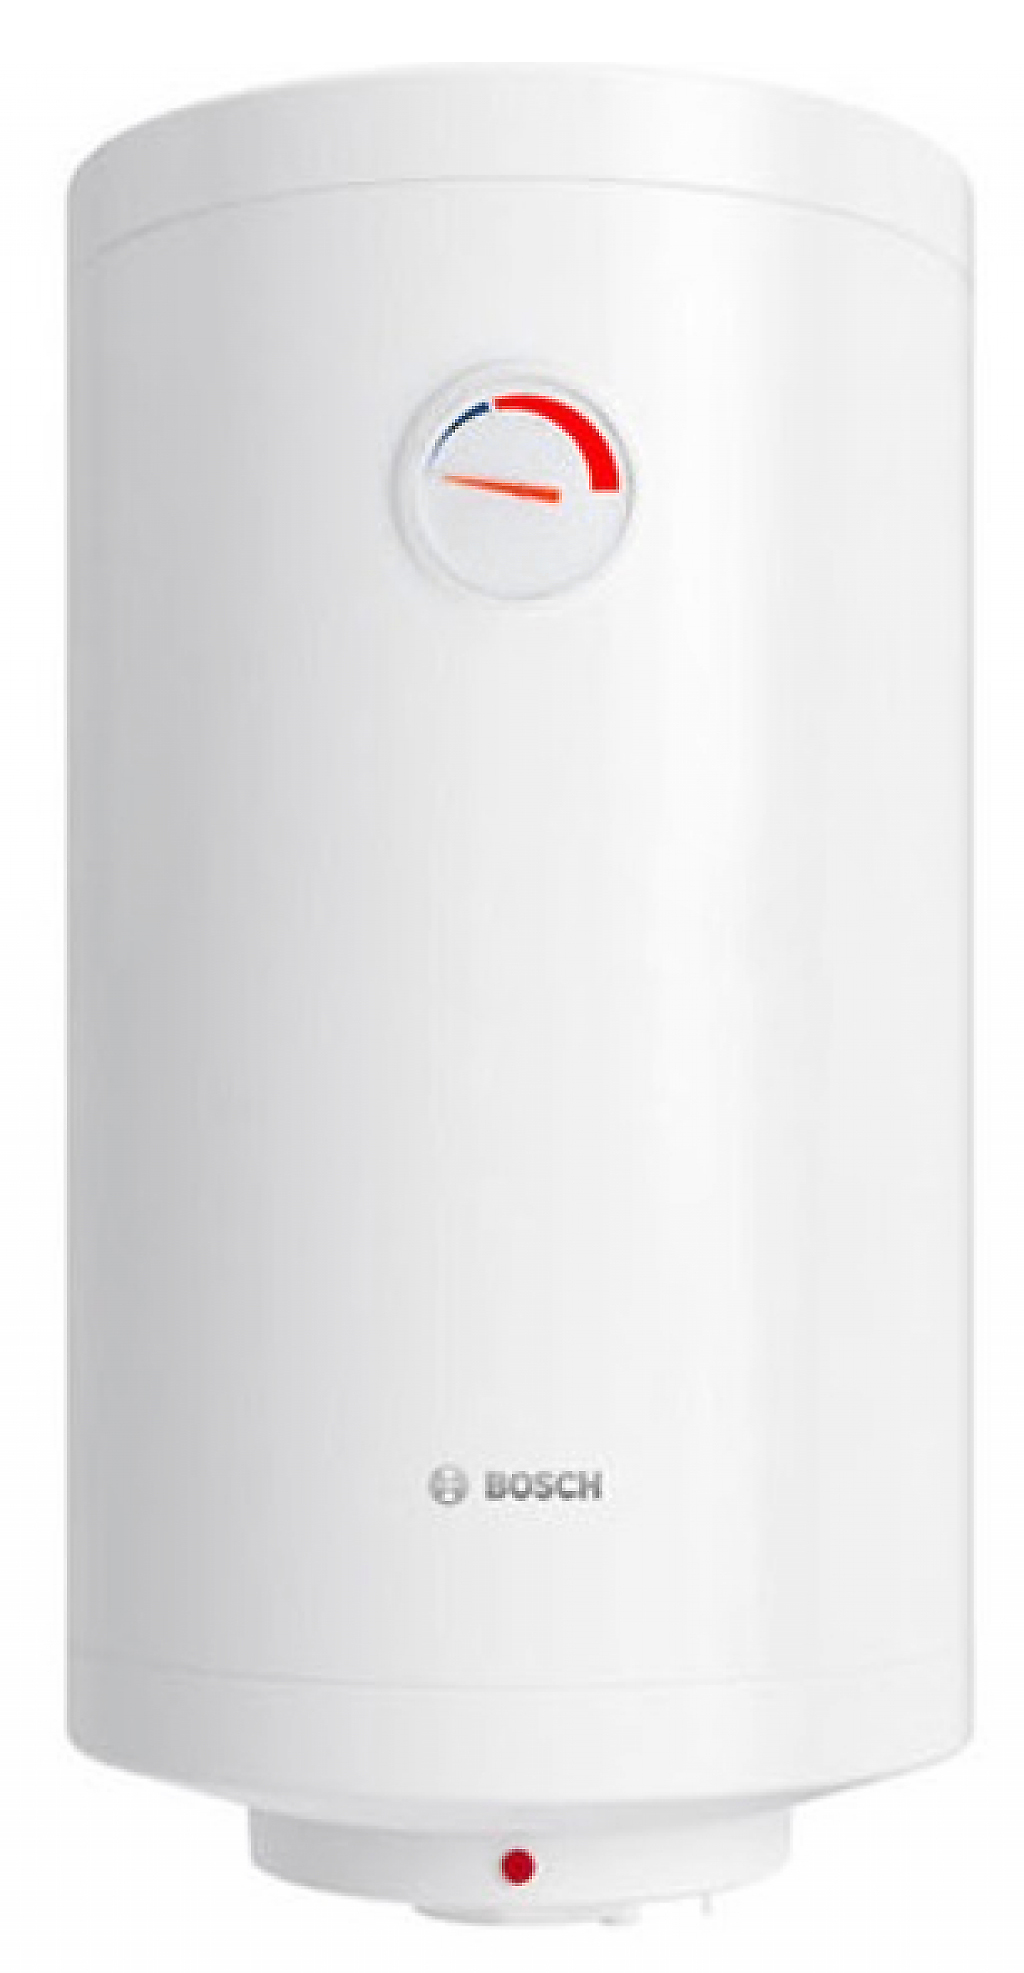 Характеристики бойлер bosch на 50 литров Bosch TR 2000 T 50 SB (7736504520)